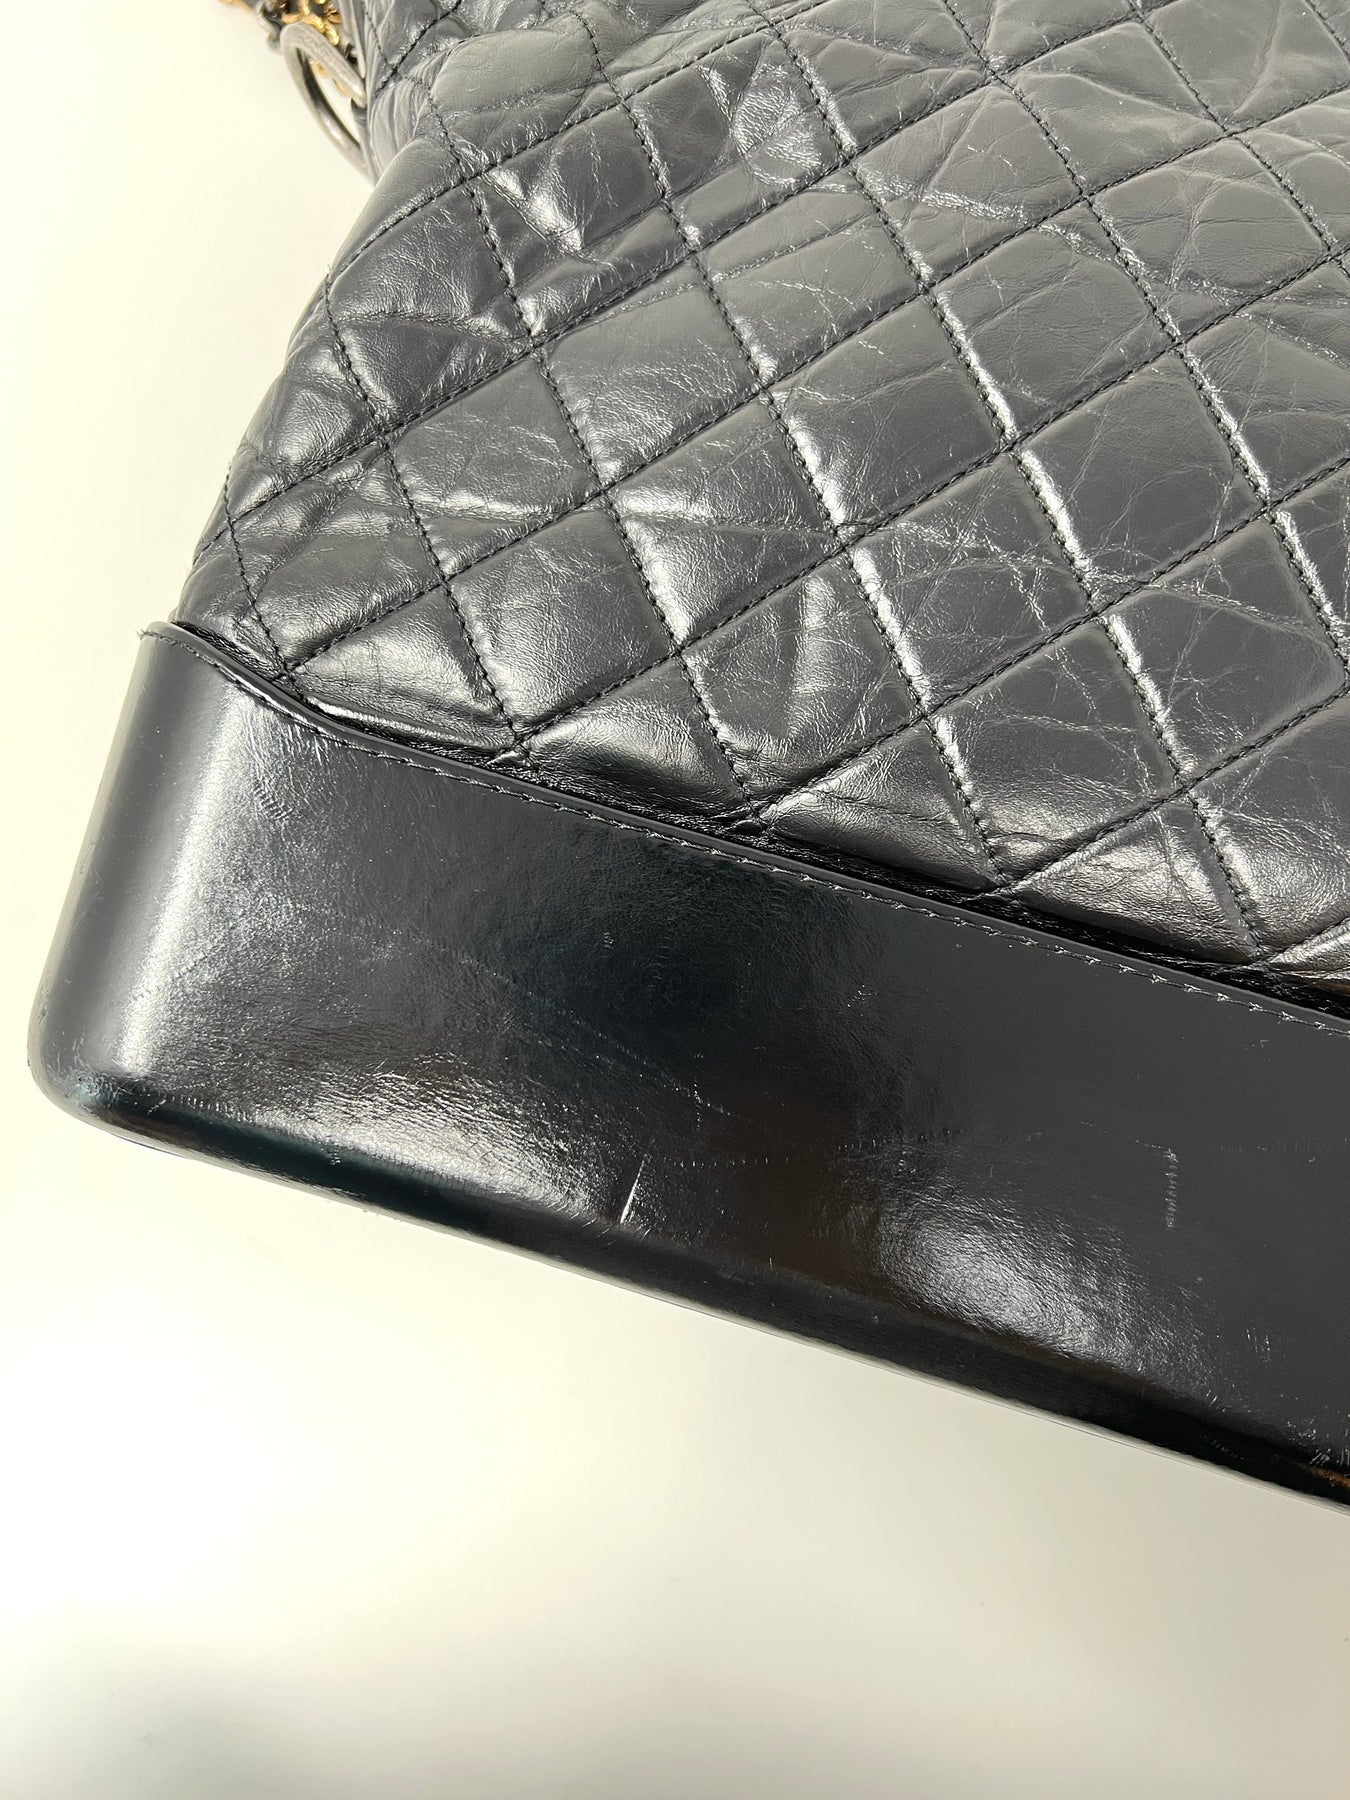 Chanel Large Gabrielle Hobo - Black Hobos, Handbags - CHA939206